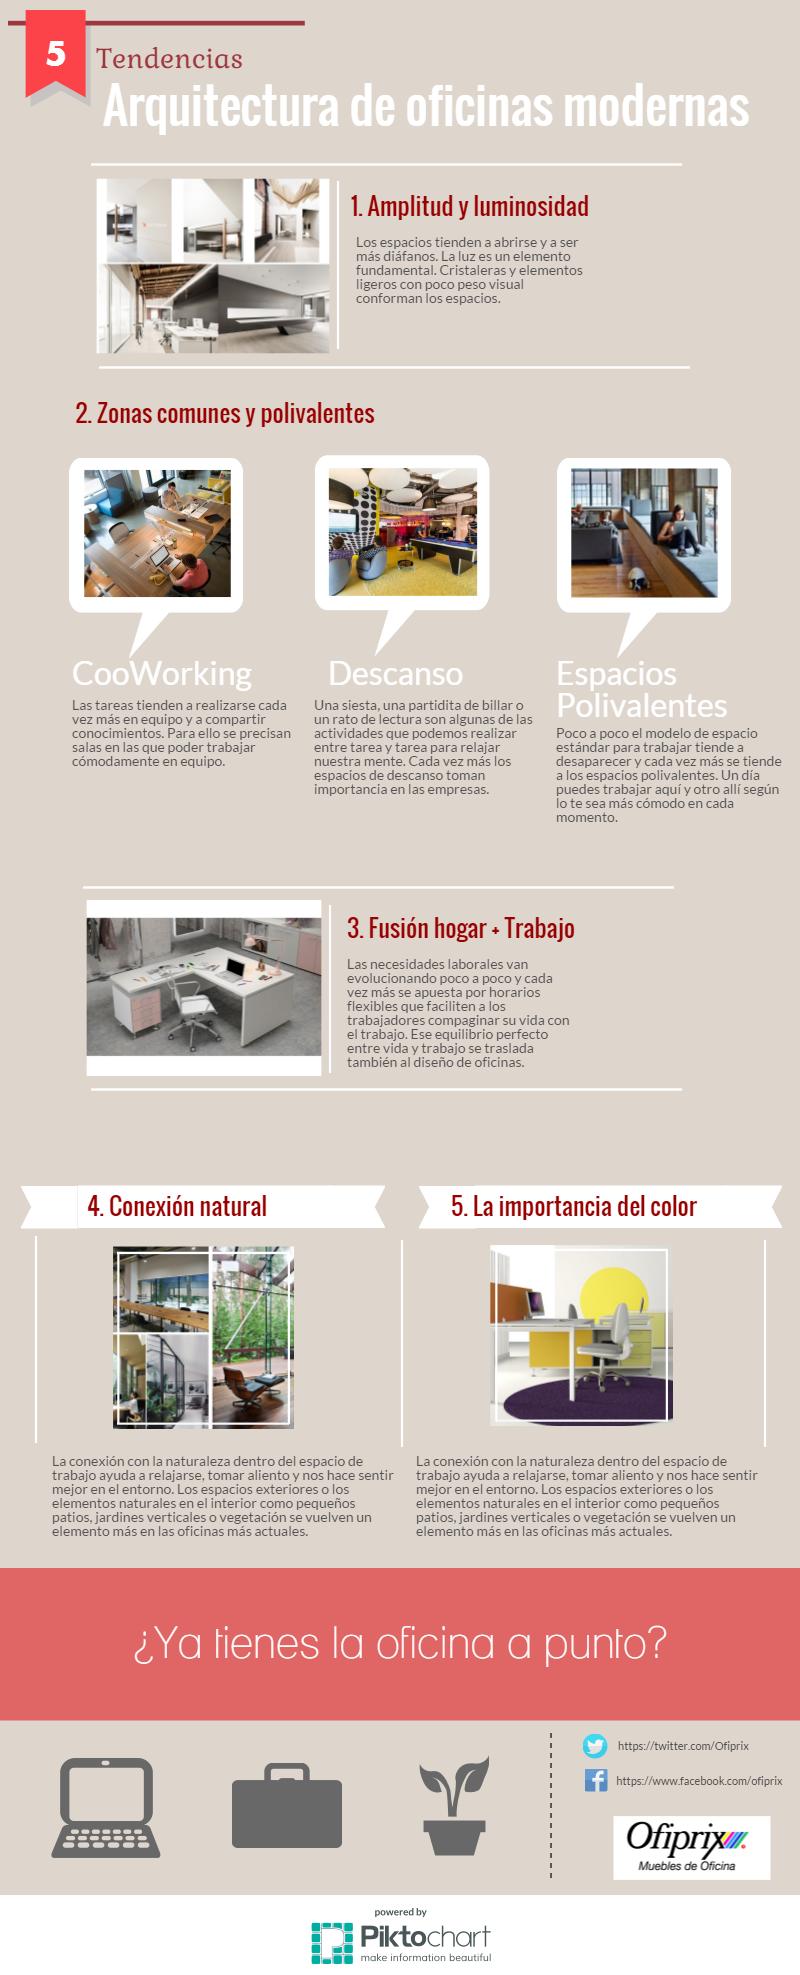 Infografia Aquitectura de Oficinas Modernas: OFIPRIX